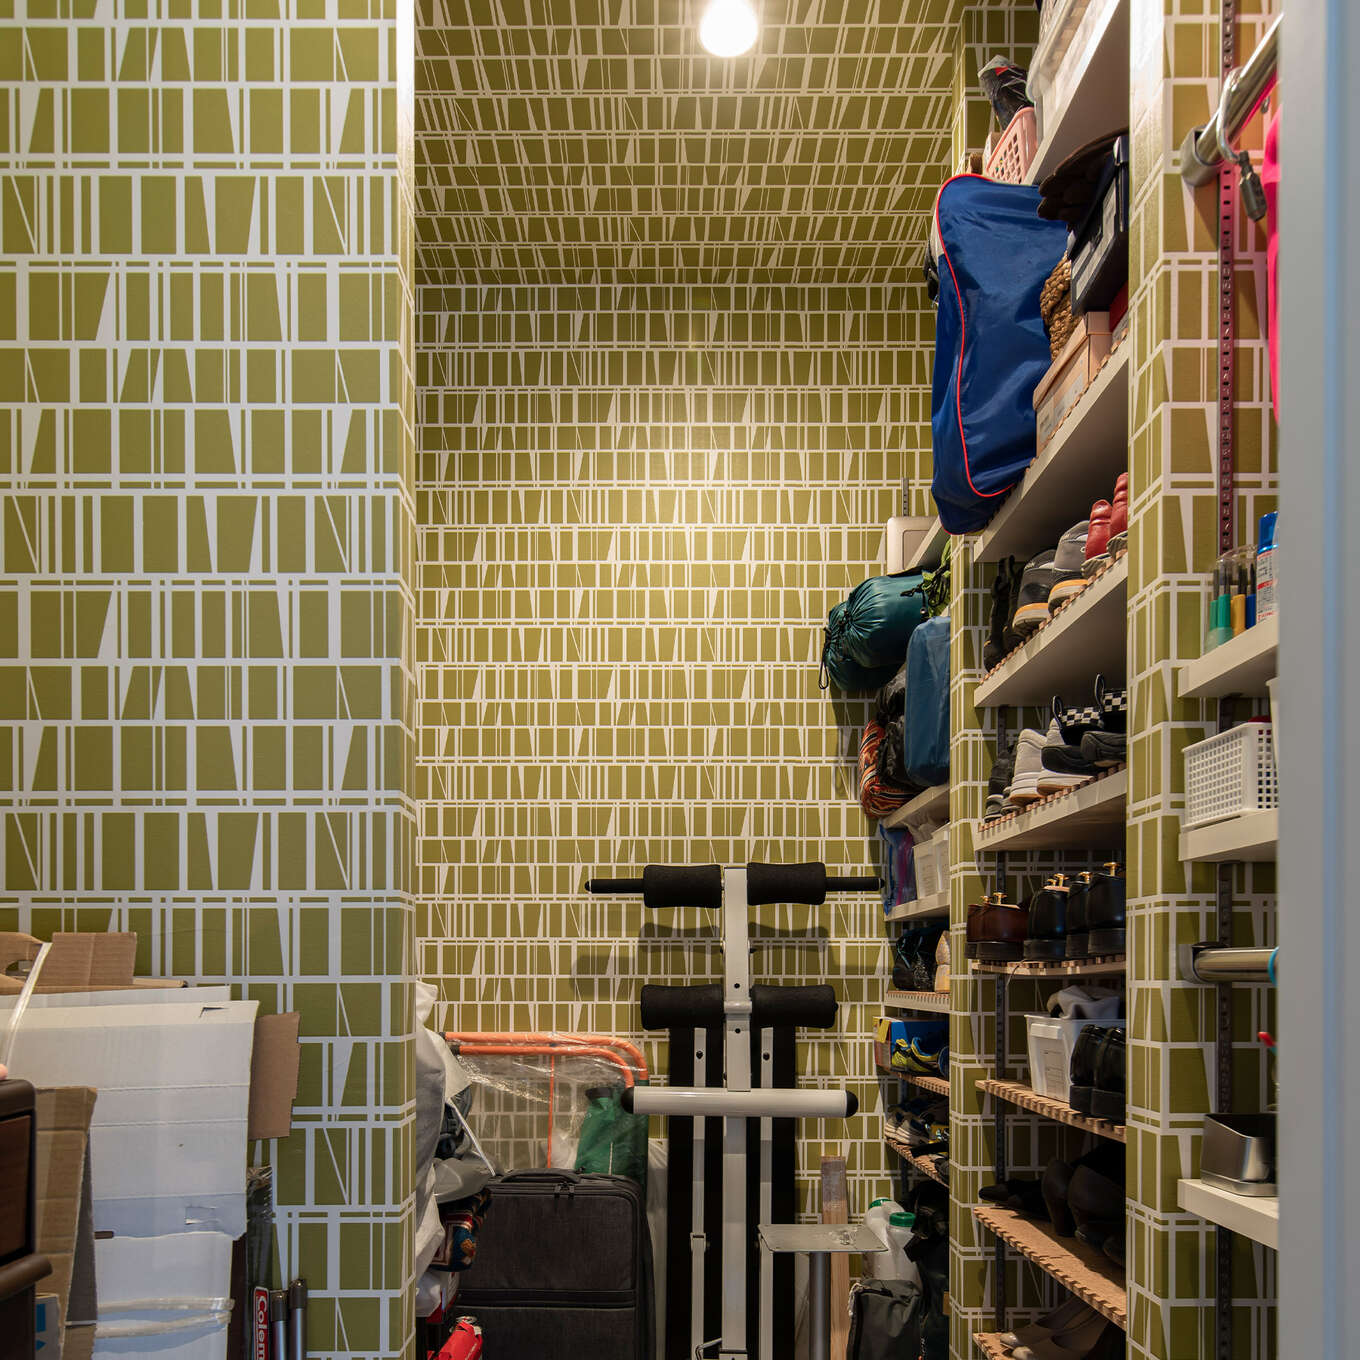 R+houseの物件のシューズインクローゼットの写真です。緑色の模様が入った壁紙は天井まで続いて一体感を生む。右側は棚になっており靴をしまえ、左側は何でも置ける空間に。